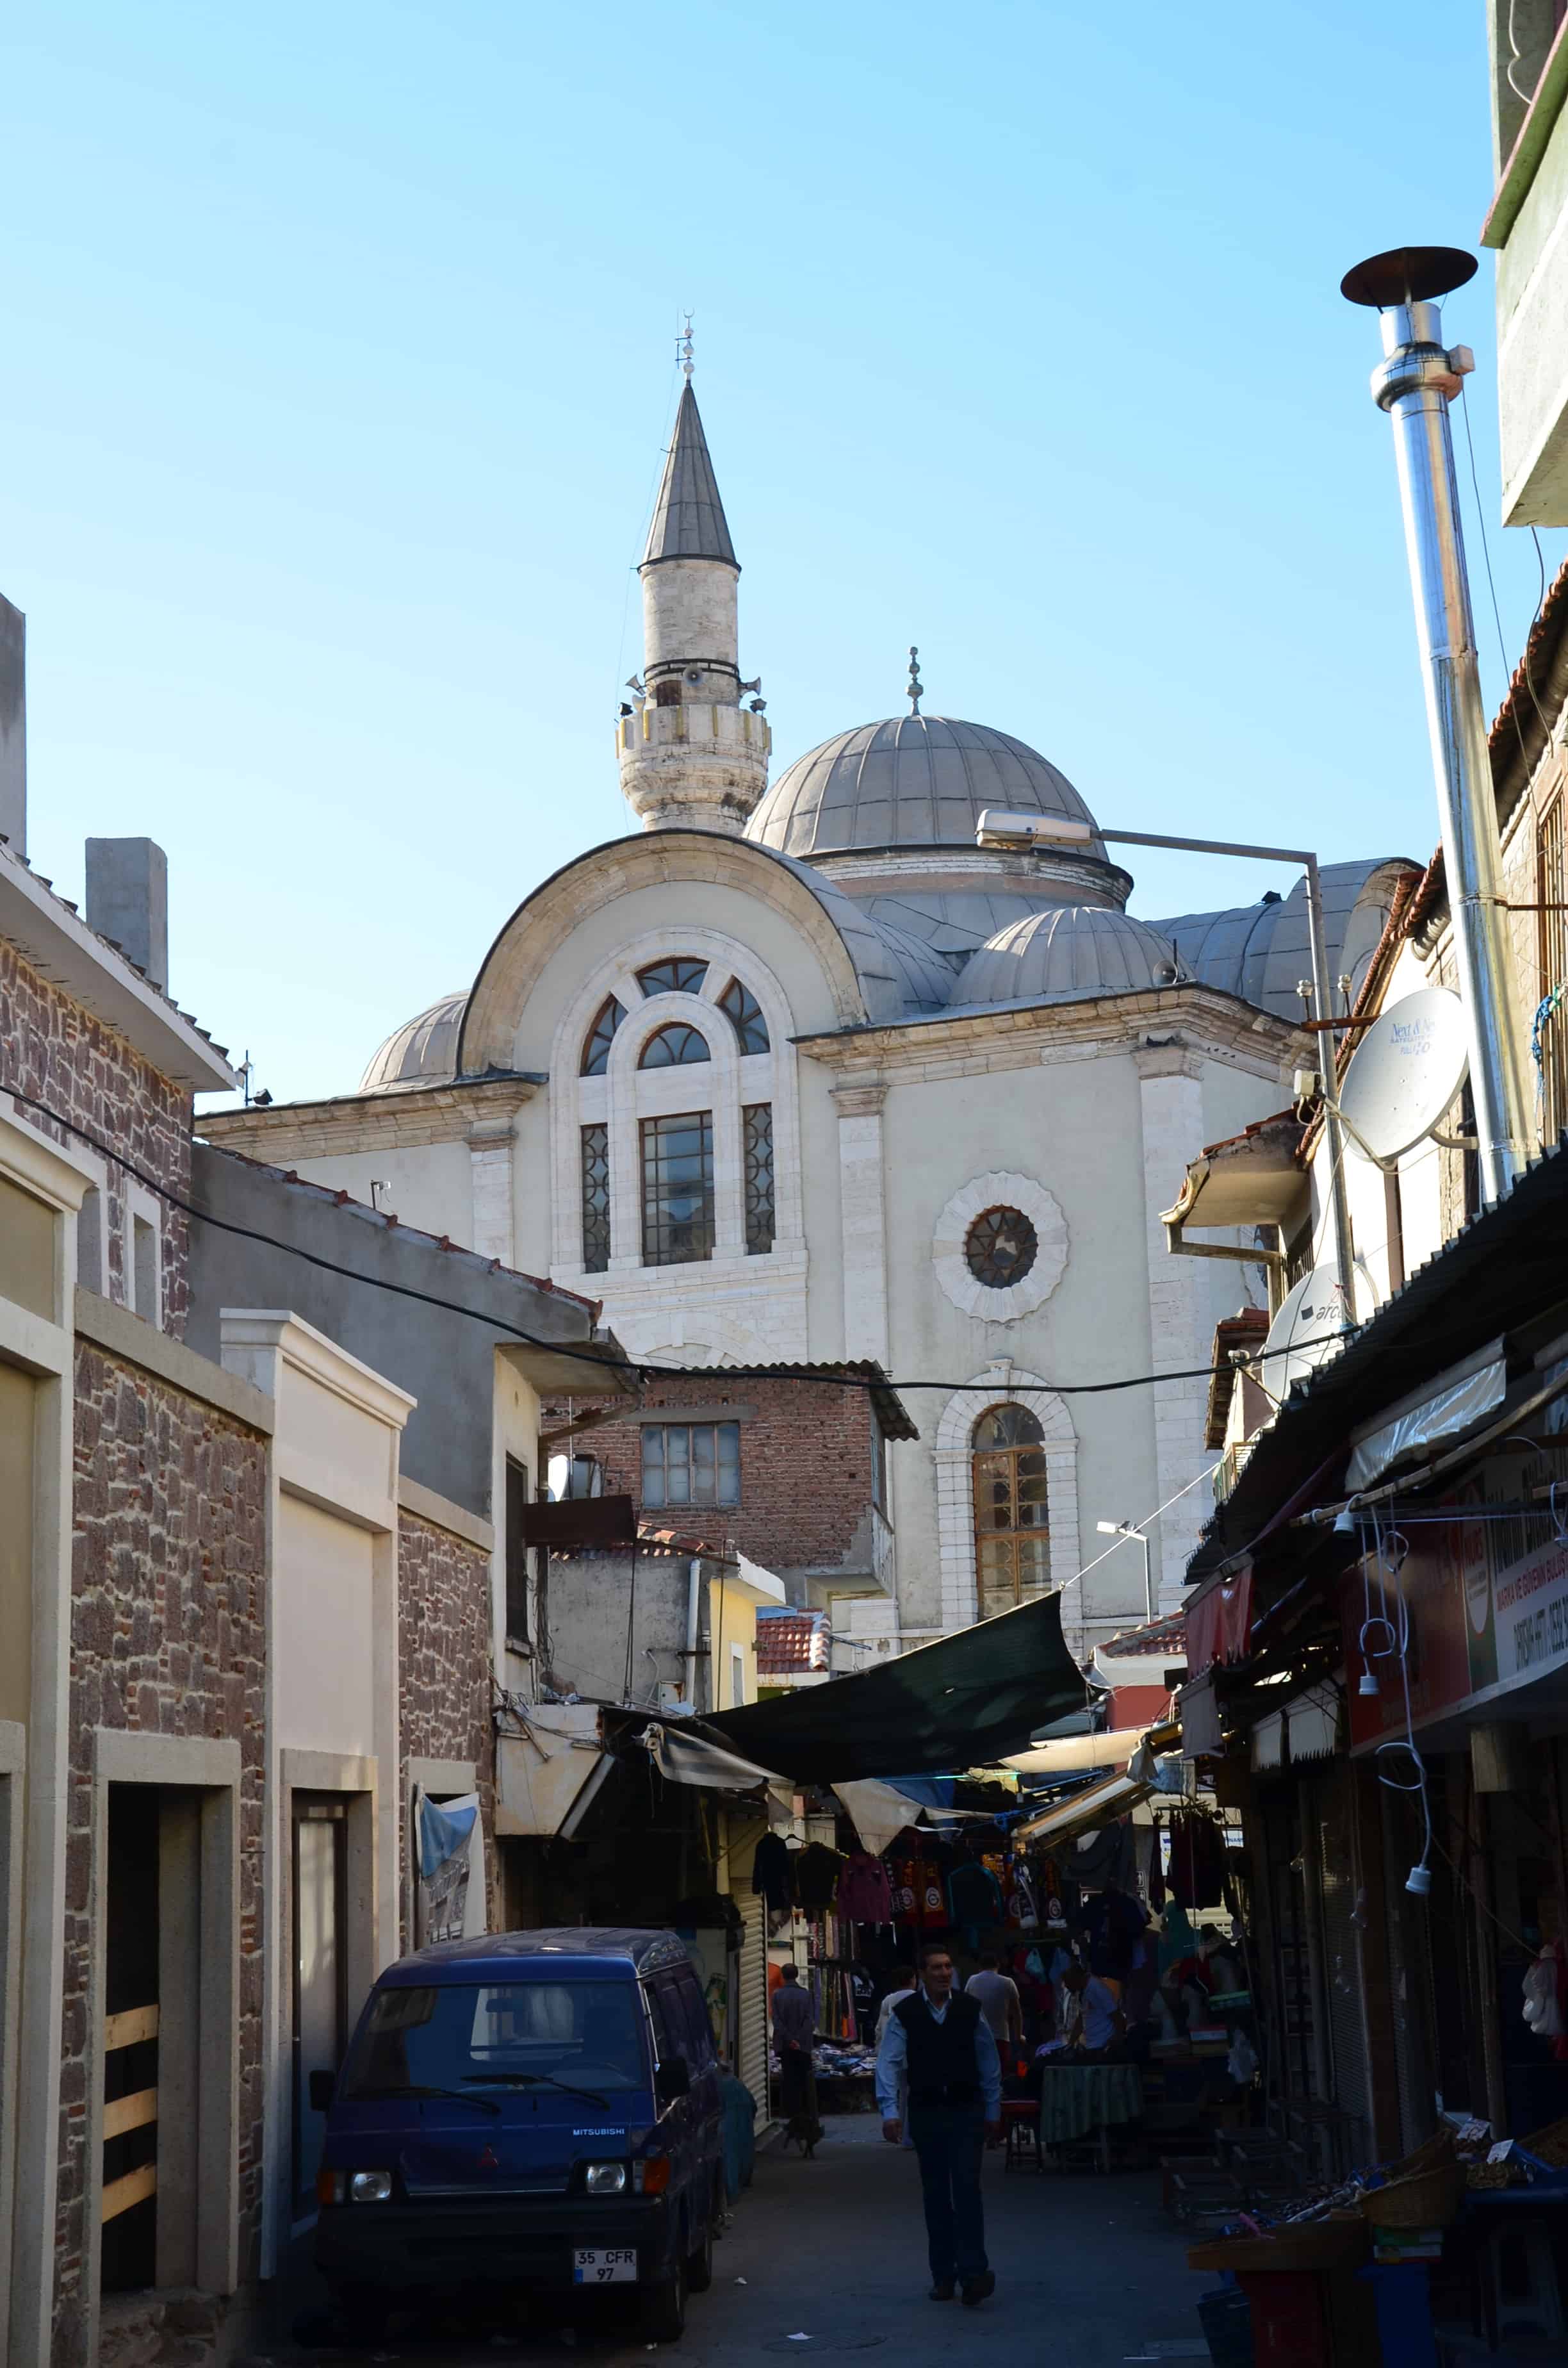 Kestanepazarı Camii in Izmir, Turkey